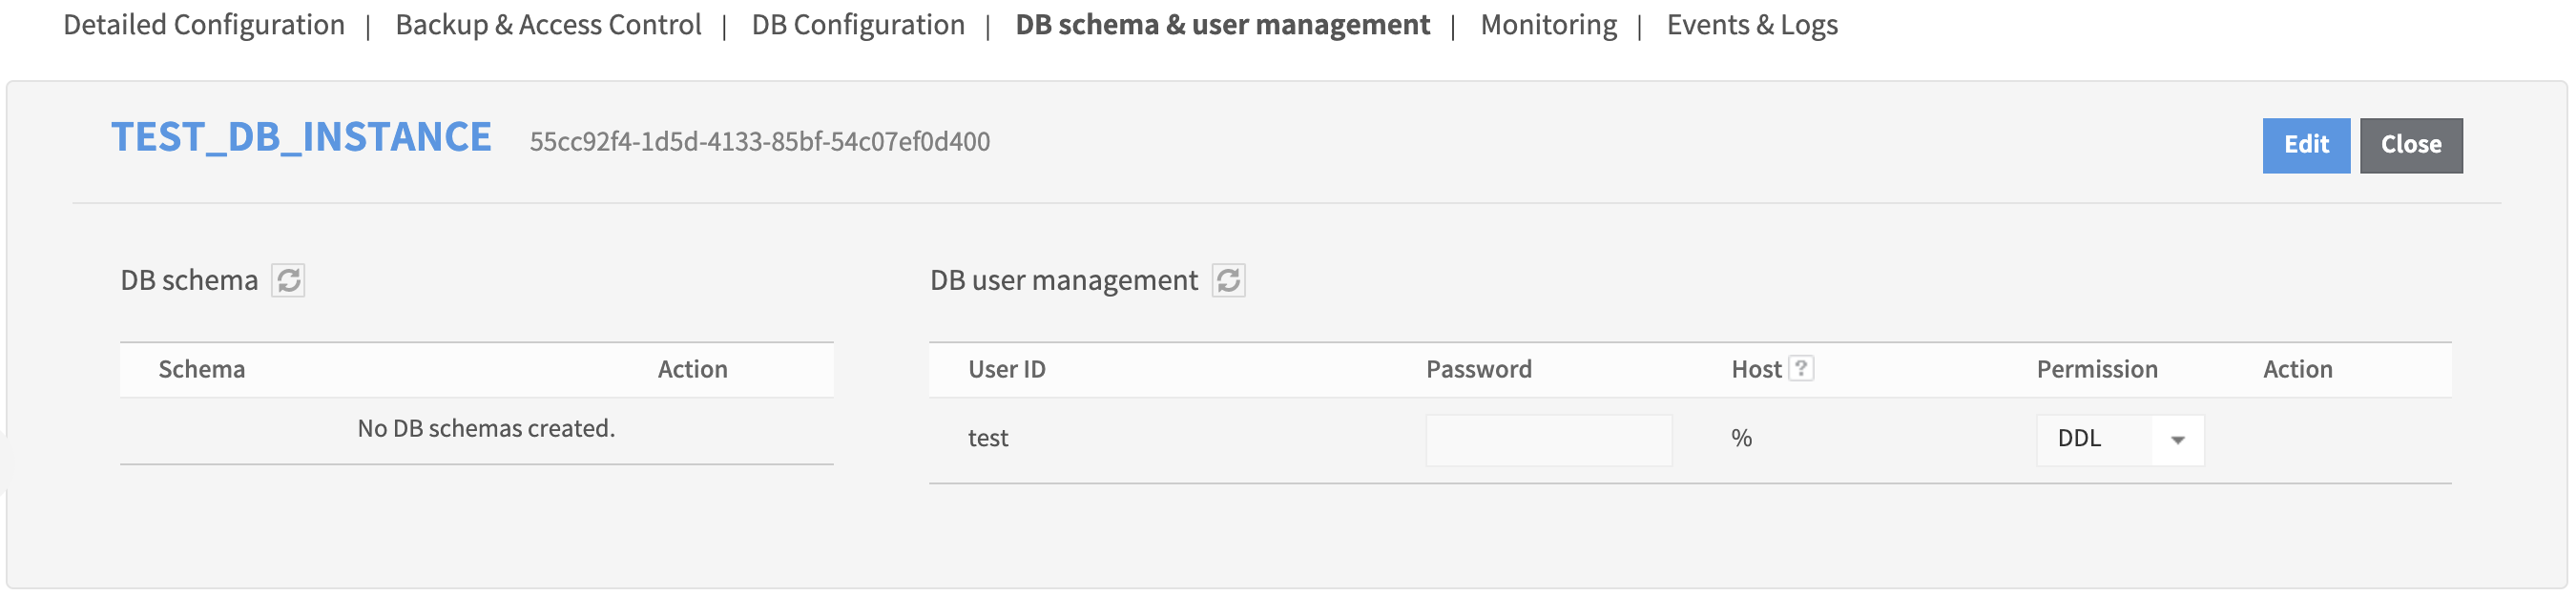 db_schema_and_user_list_20210209_en